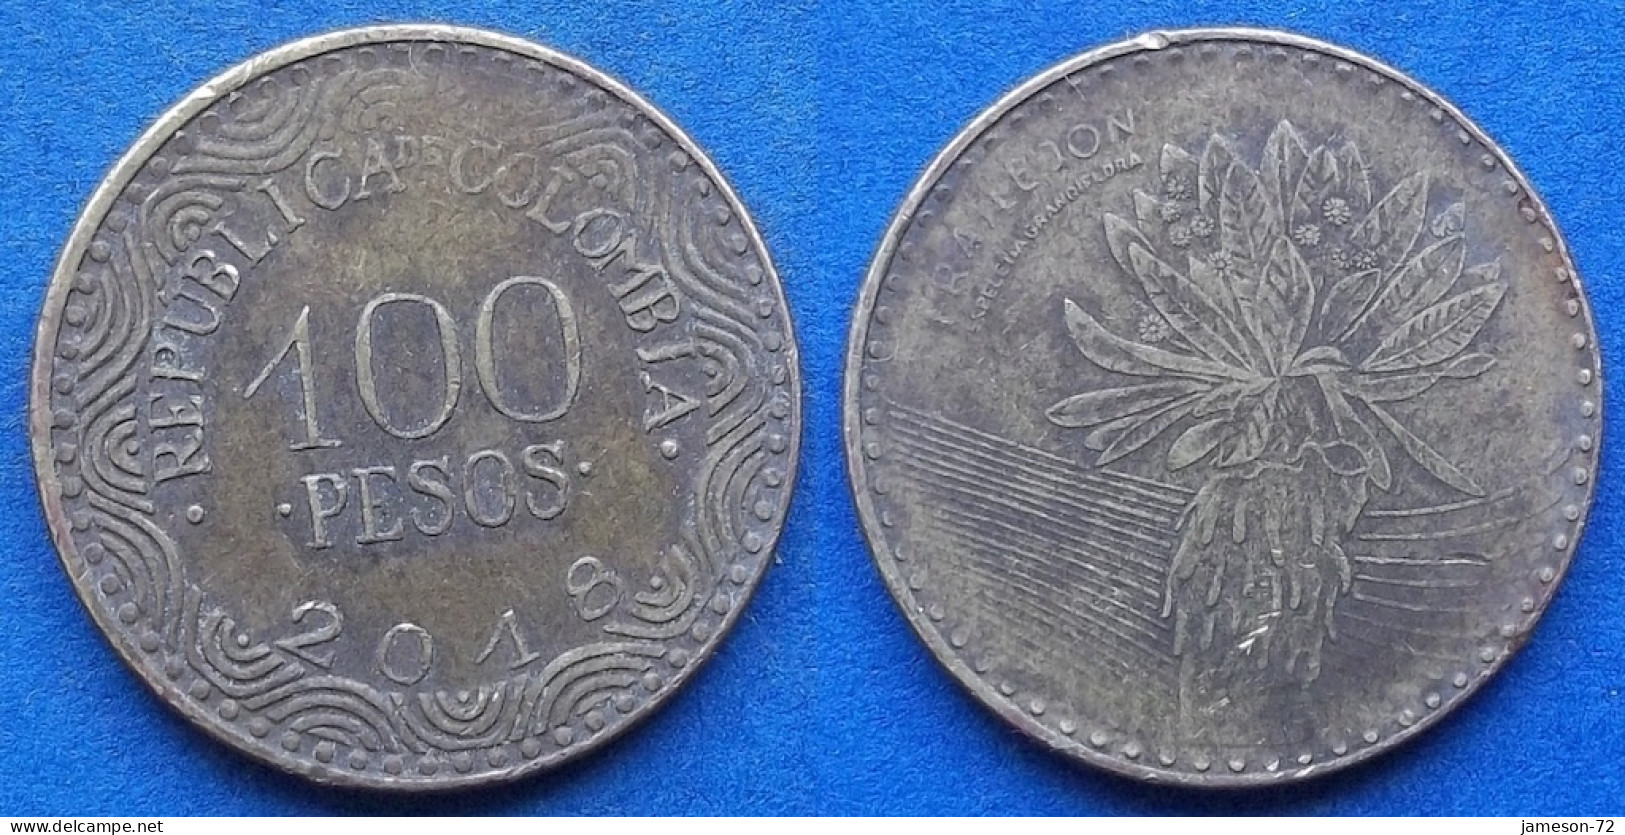 COLOMBIA - 100 Pesos 2018 "Frailejon" KM# 296 Republic - Edelweiss Coins - Kolumbien